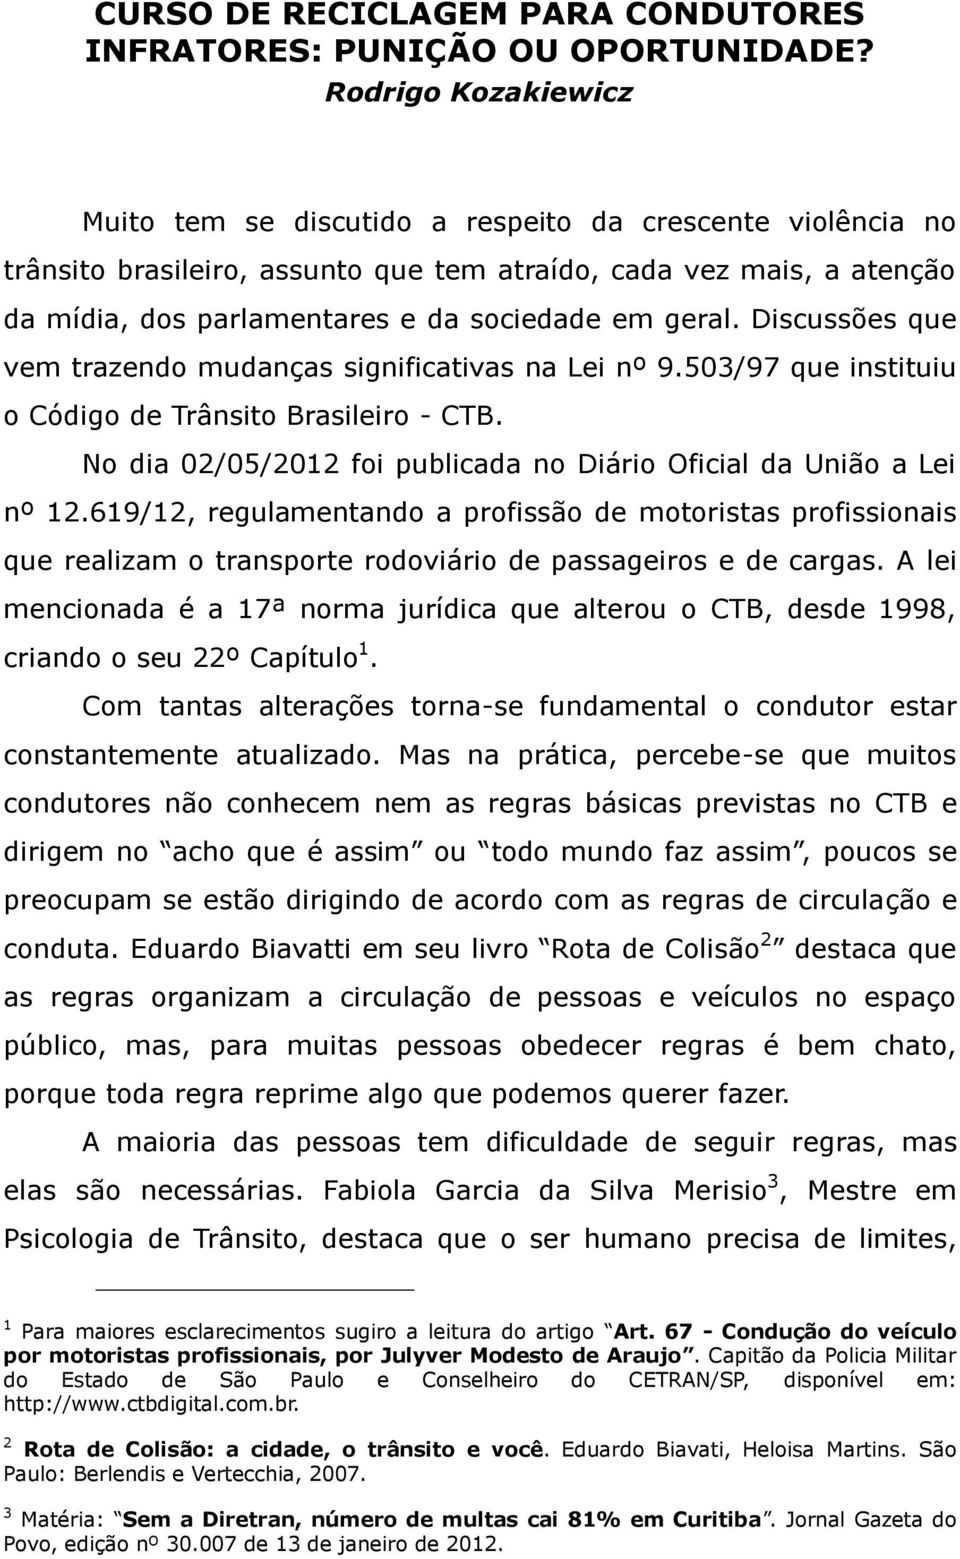 geral. Discussões que vem trazendo mudanças significativas na Lei nº 9.503/97 que instituiu o Código de Trânsito Brasileiro - CTB.